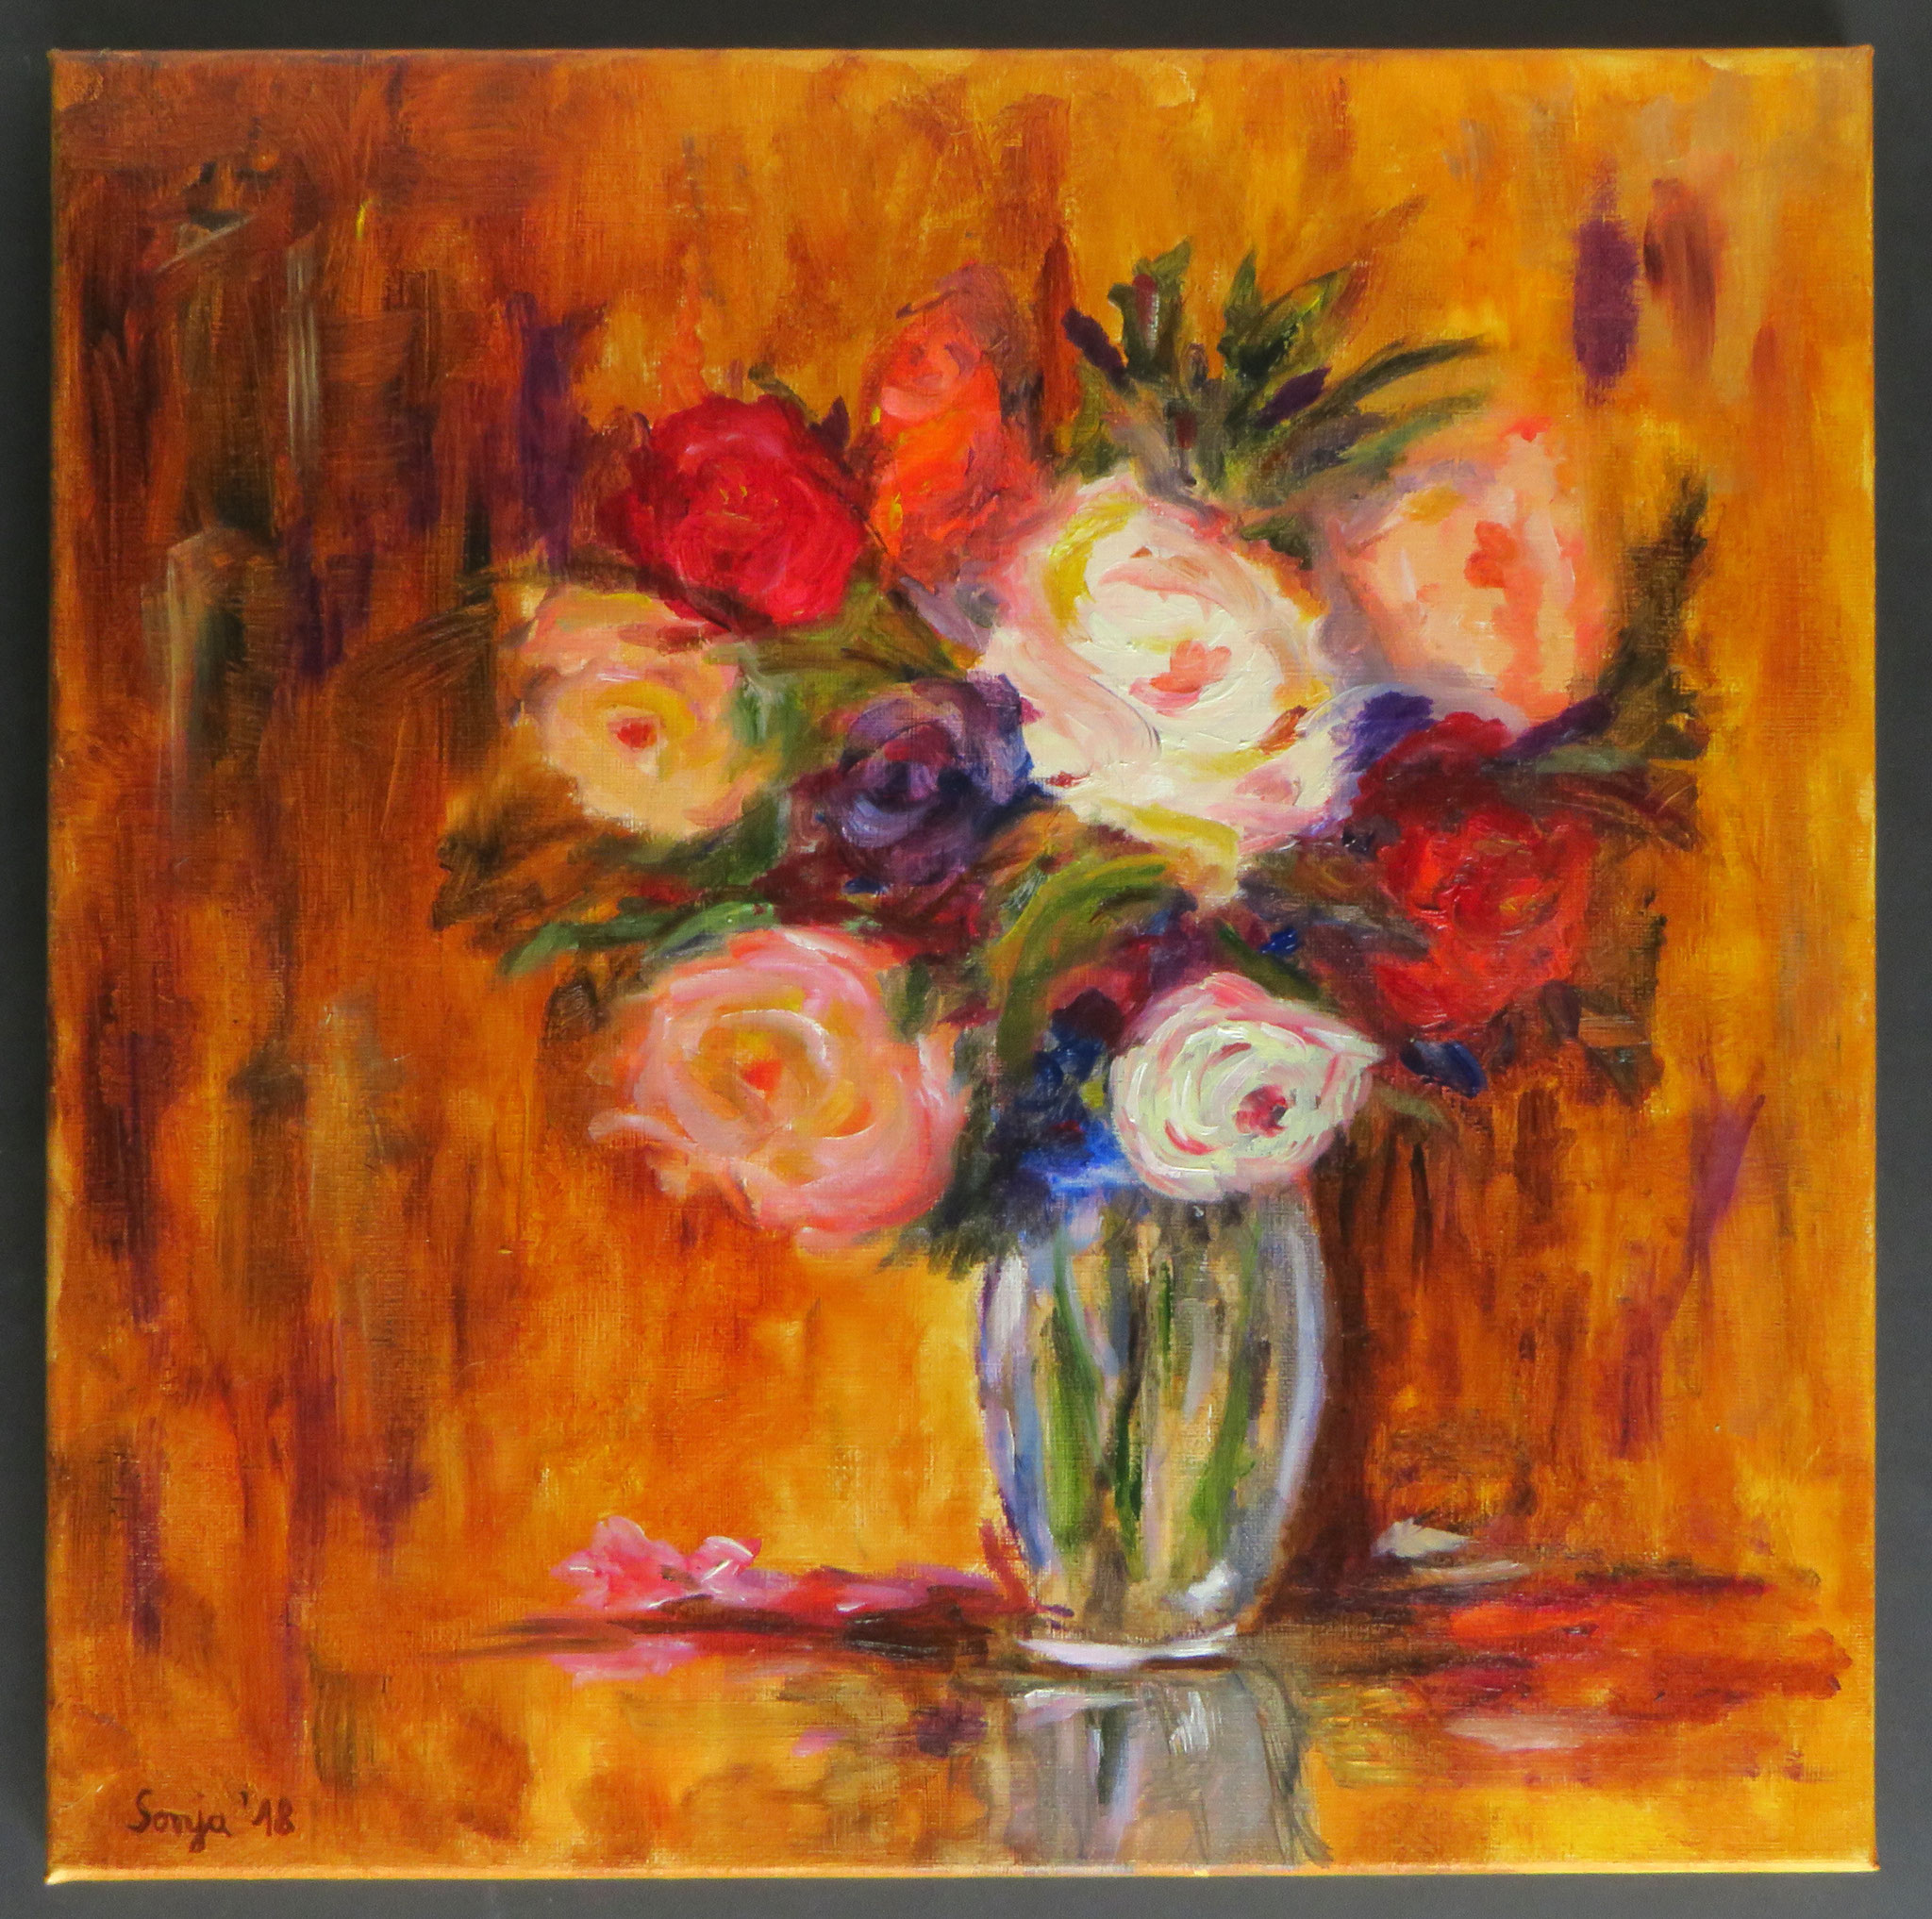 "Rosen und Ranunkeln, Öl auf Leinwand, 40 x 40 cm